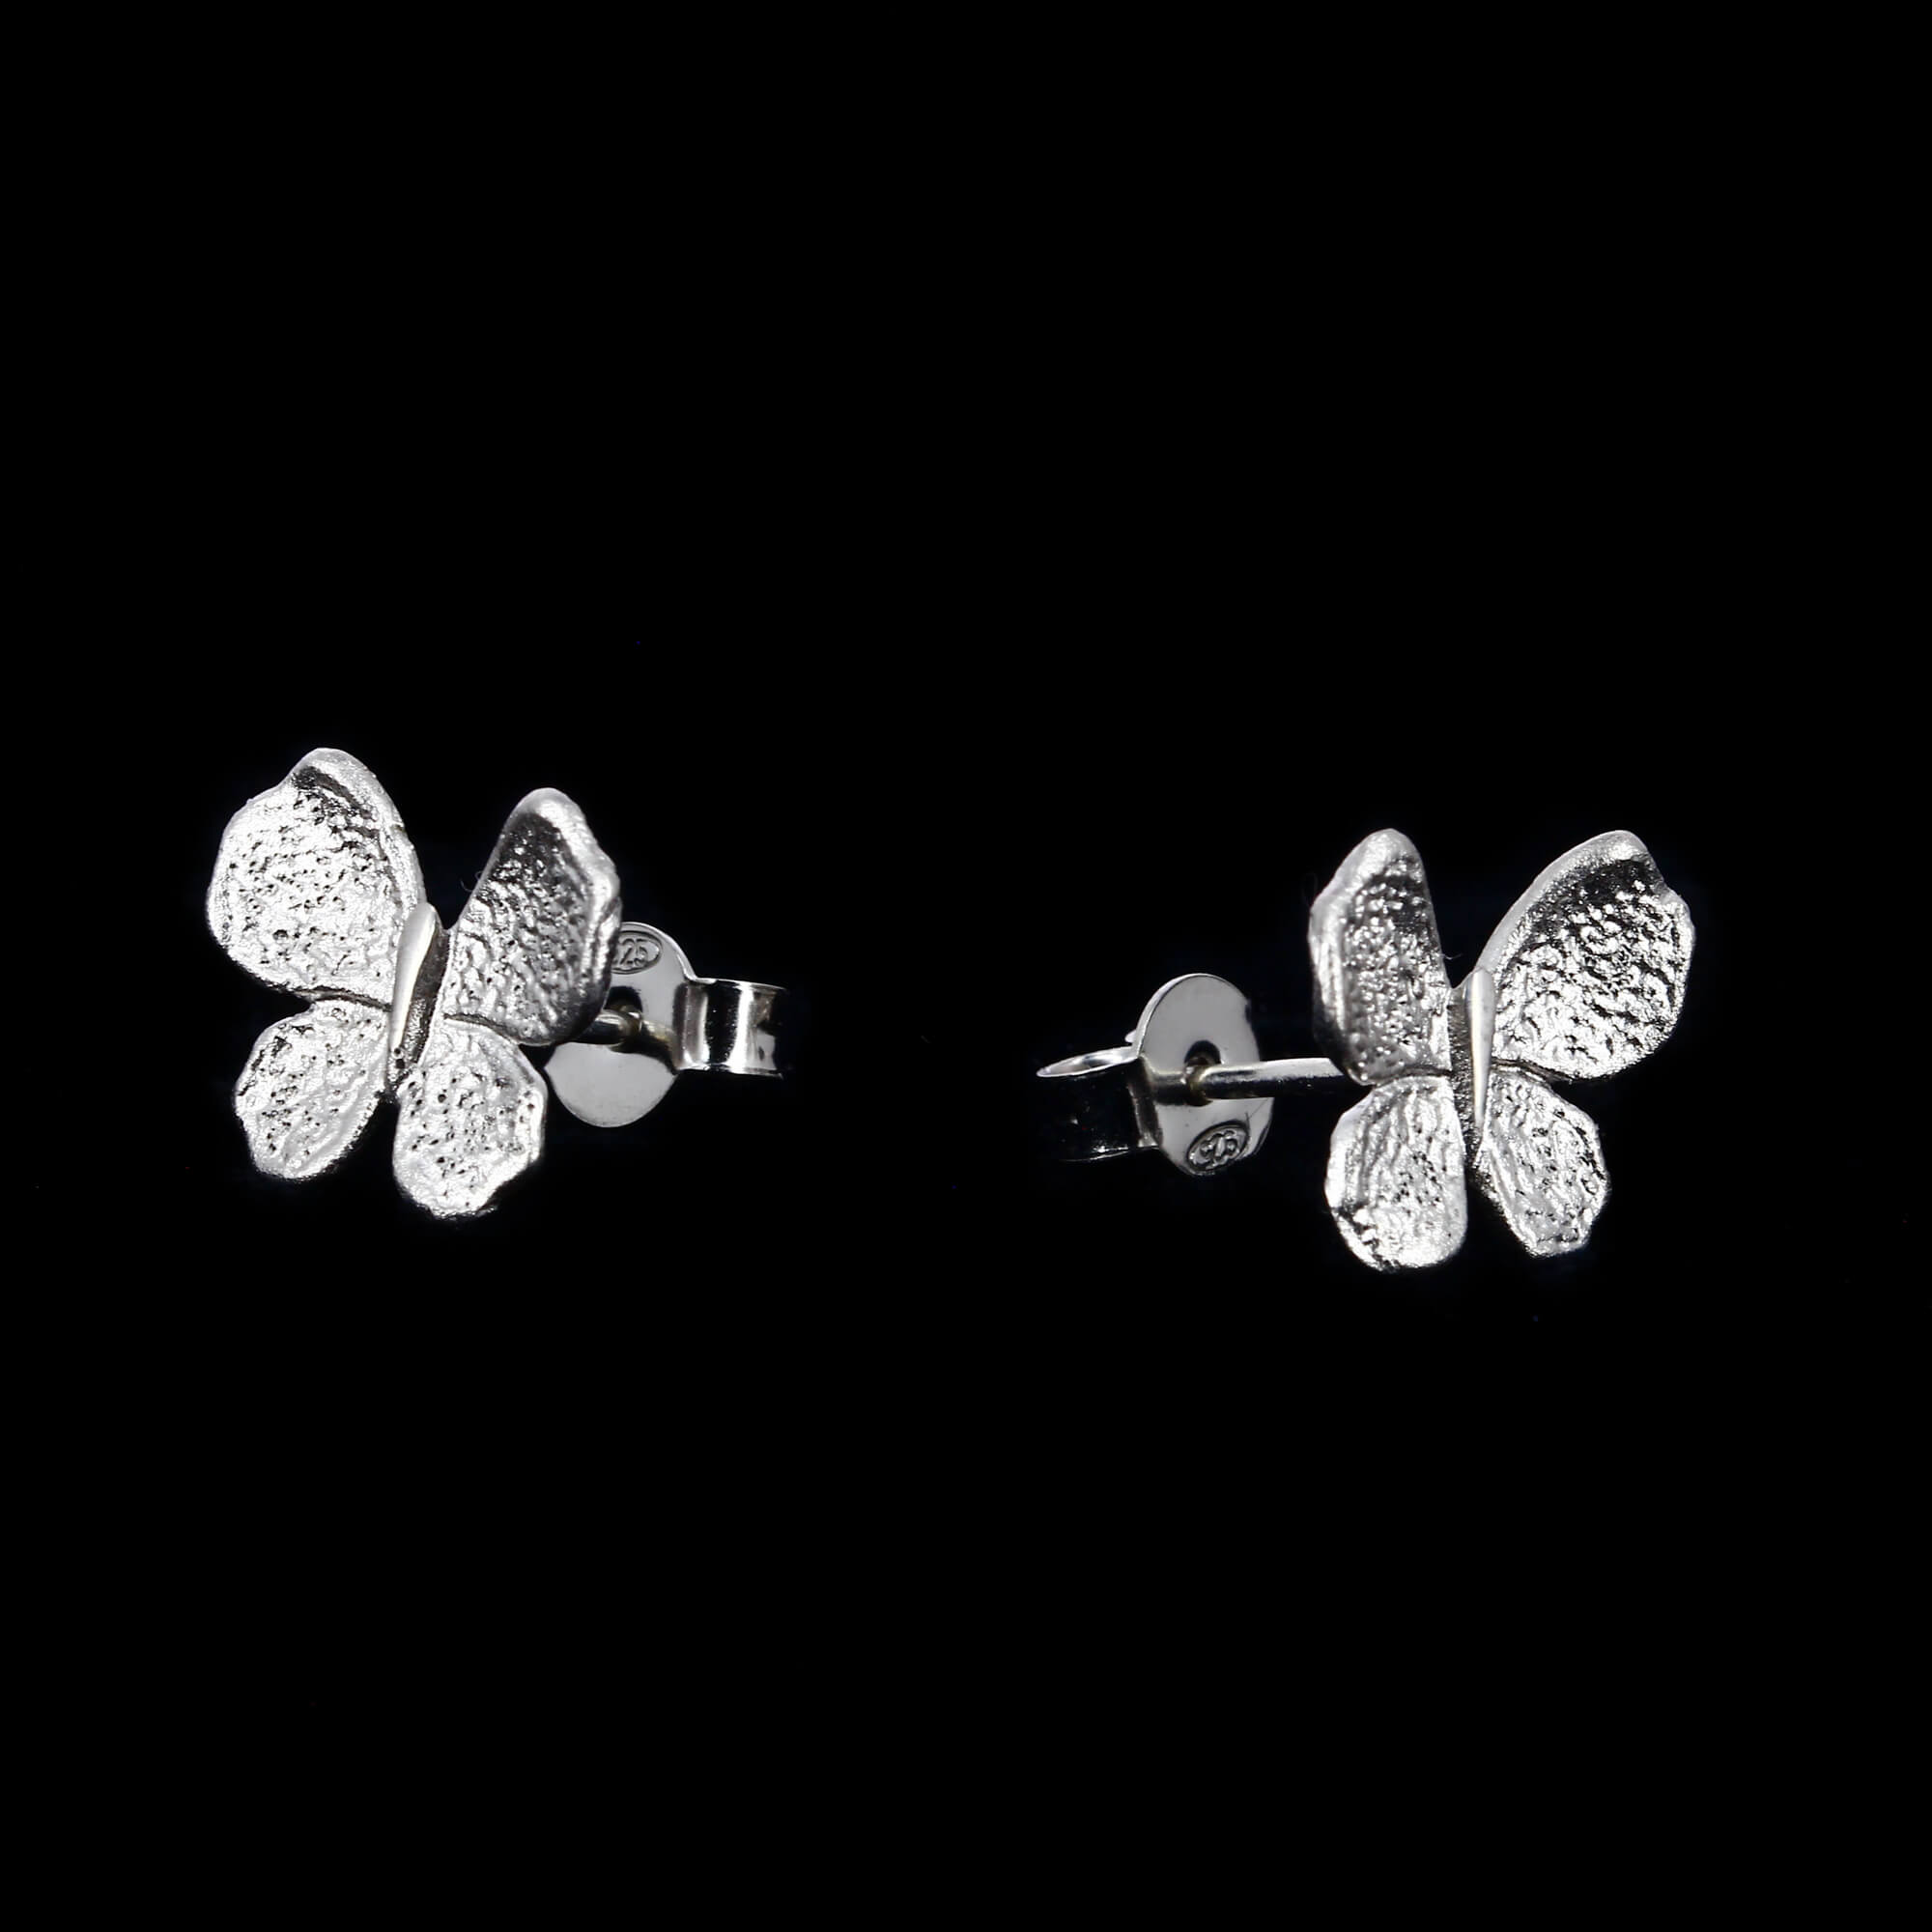 Silver mini butterfly earrings